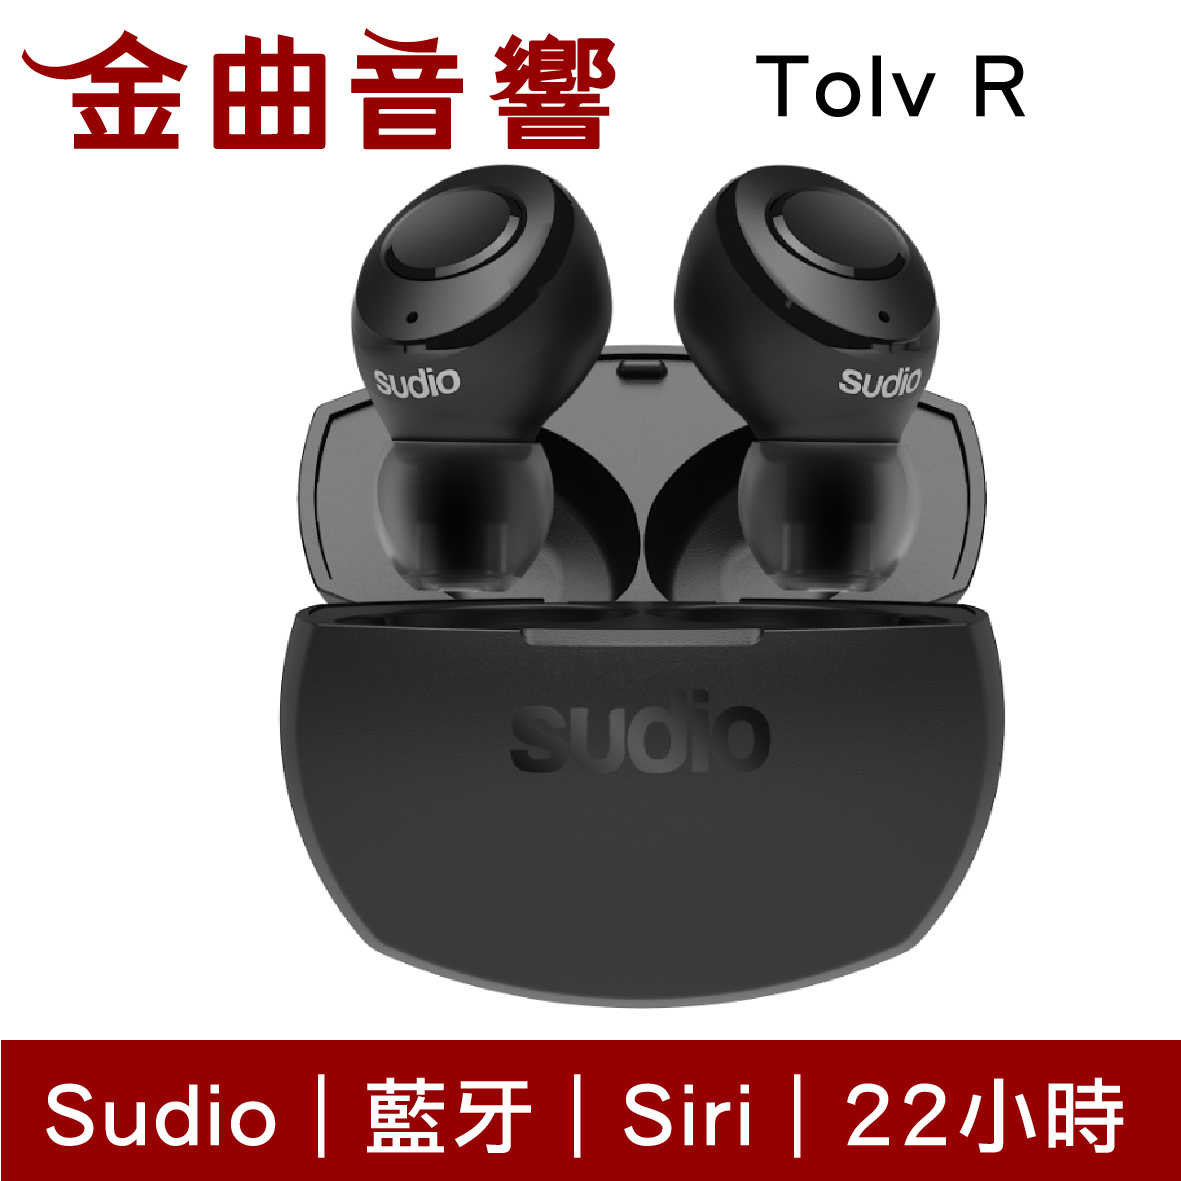 【現貨】Sudio Tolv R 粉色 真無線 藍芽耳機 可通話 語音助理 TolvR | 金曲音響